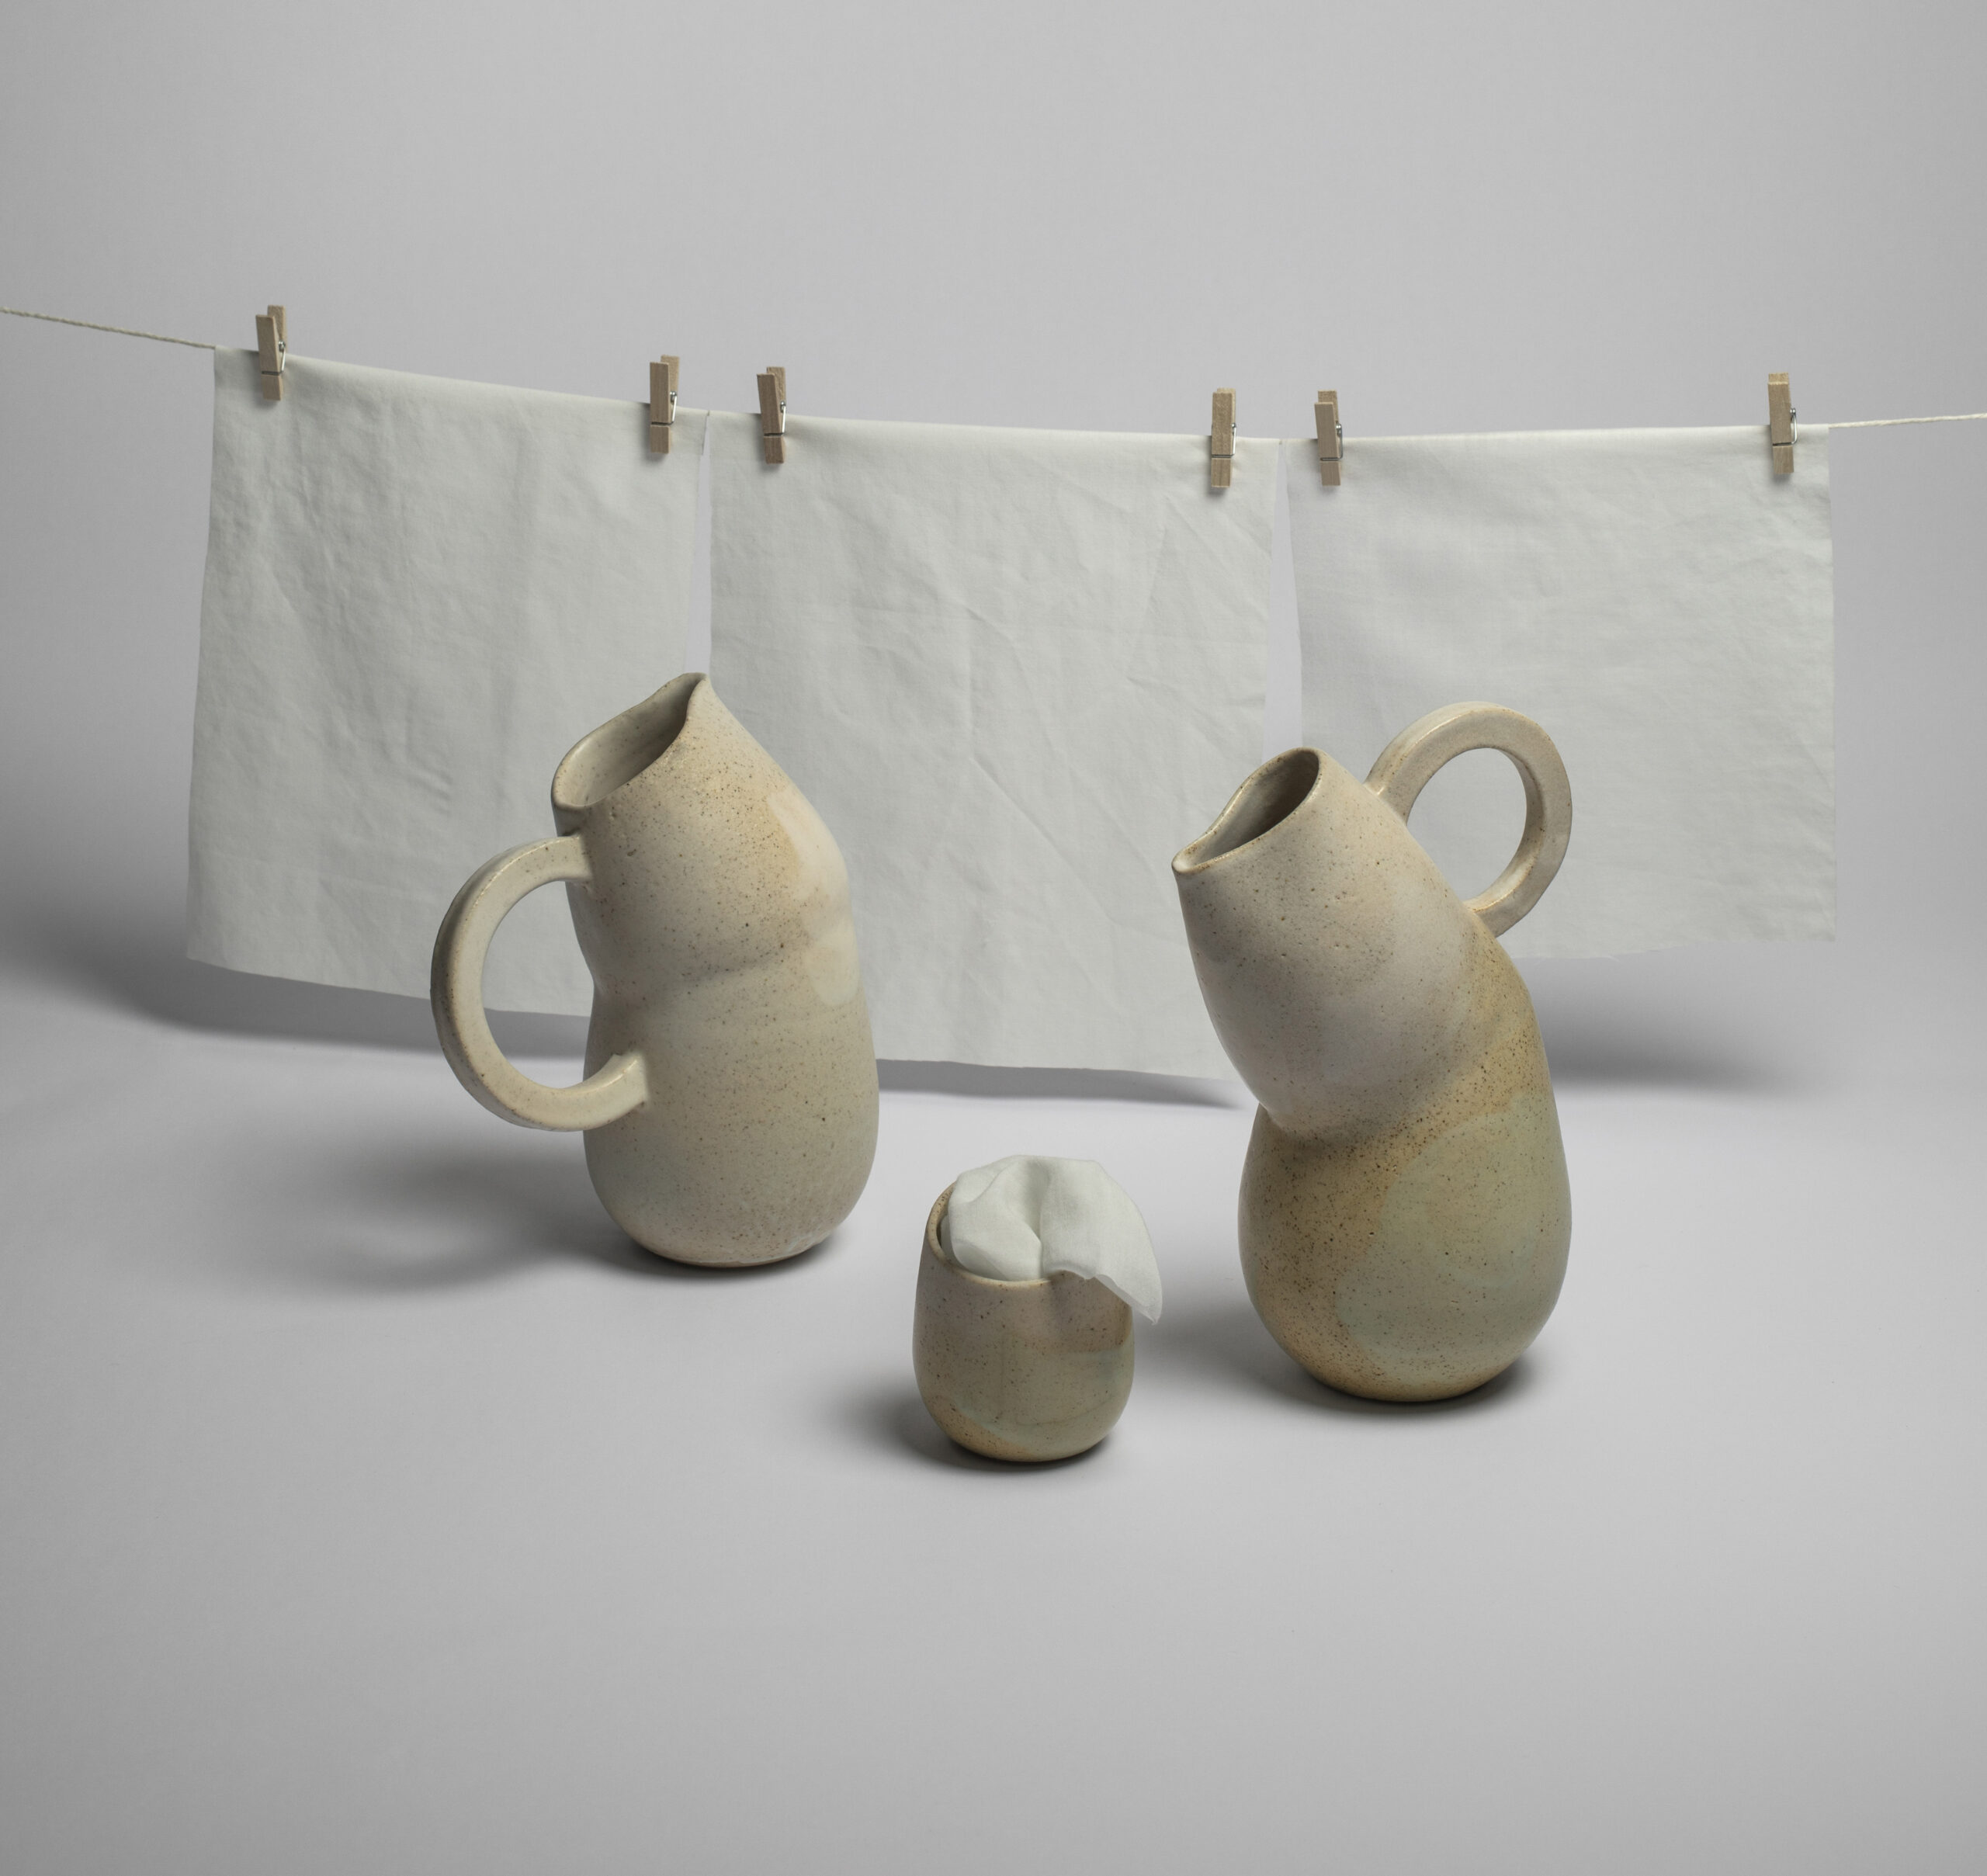 ANA ILLUECA: Keramiken mit mediterranen Geschichten, die ihre physischen Grenzen überschreiten.